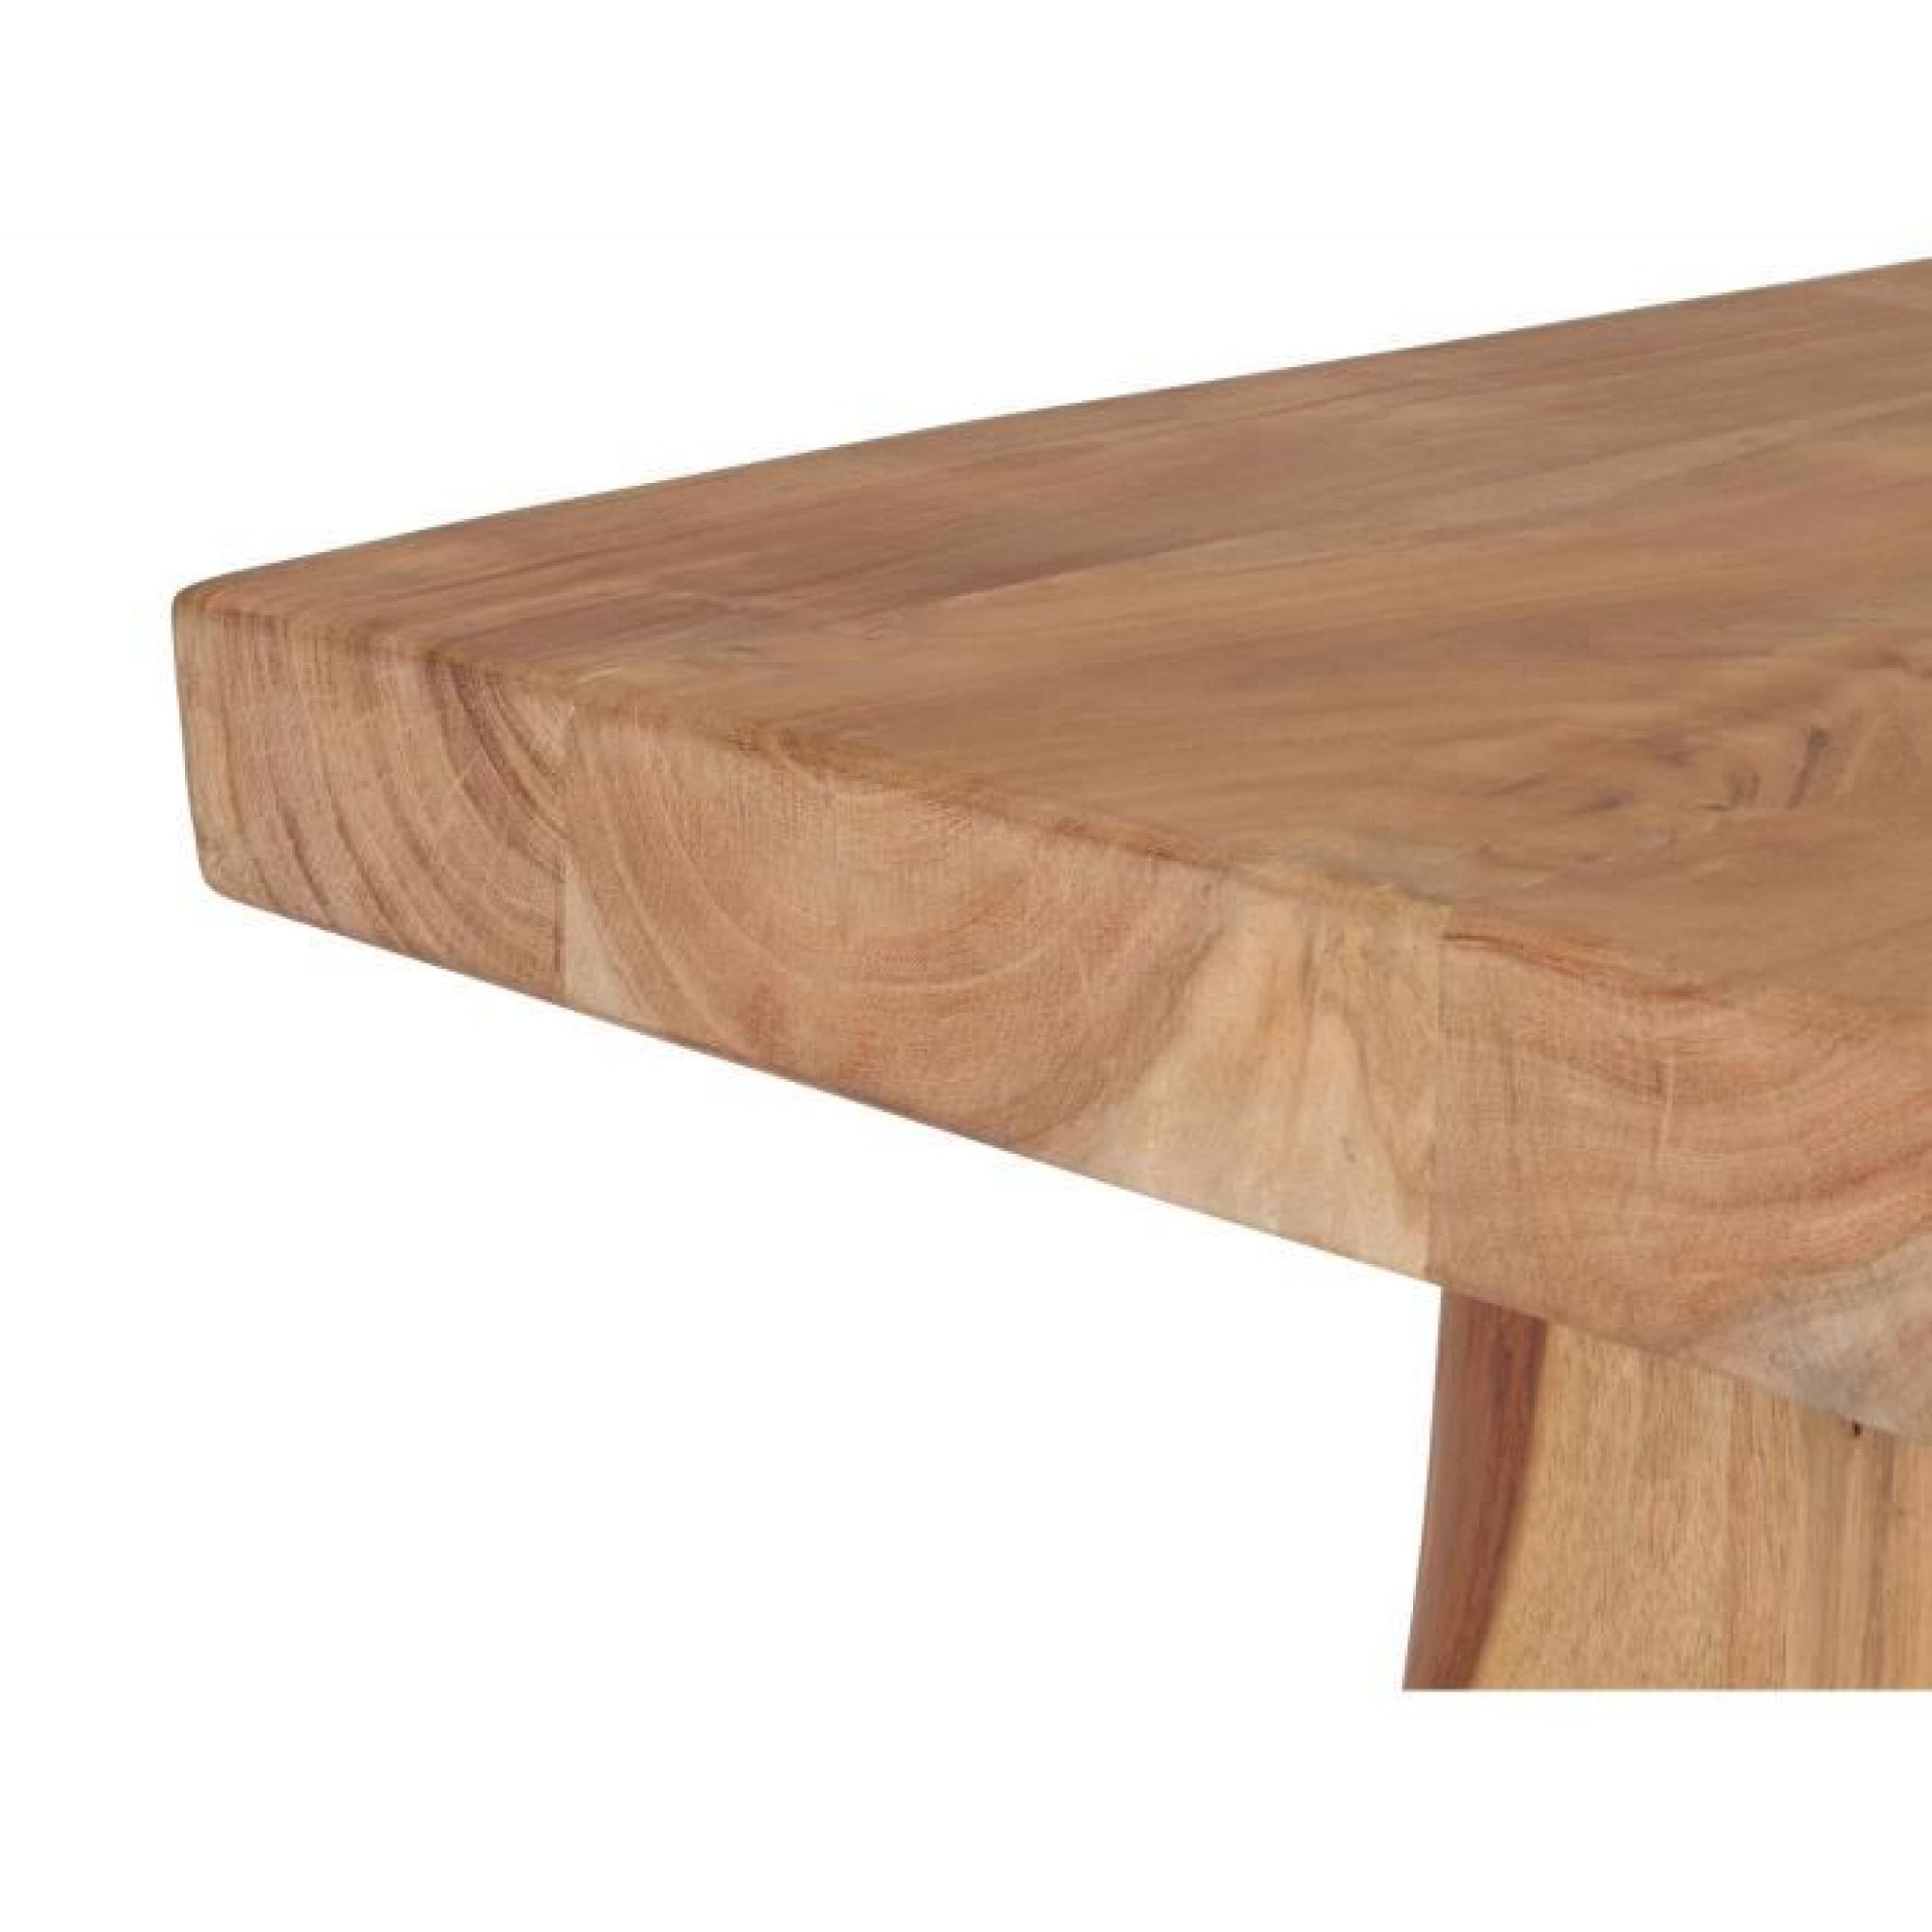 Table basse CANYON 120x70 en acacia laqué naturel massivum pas cher